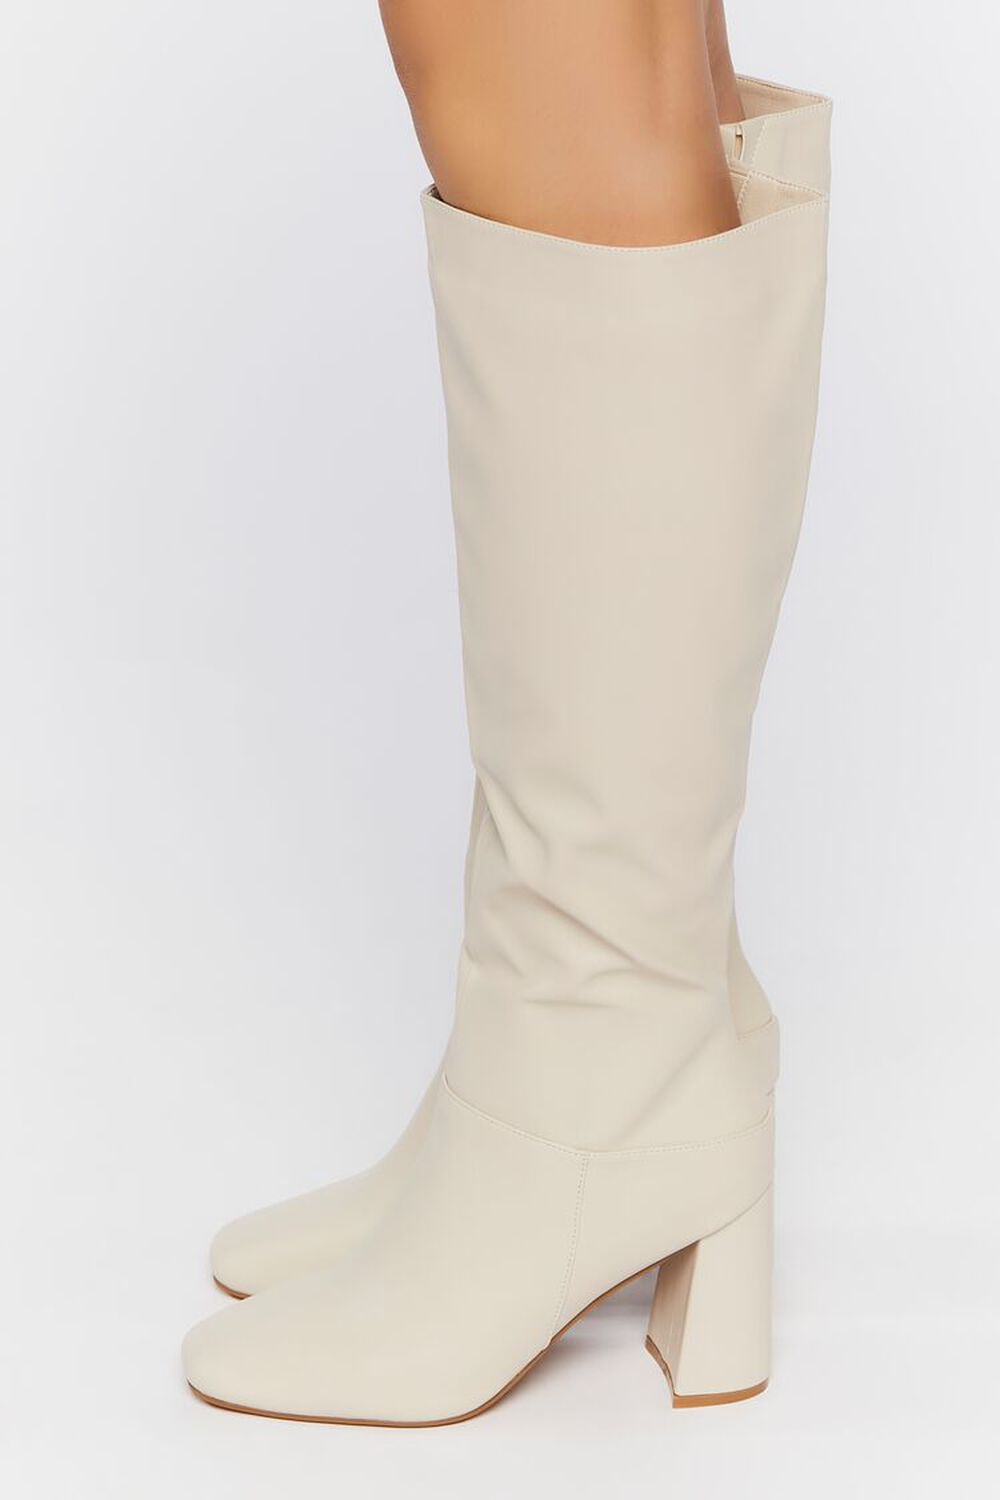 CREAM Knee-High Block Heel Boots, image 2